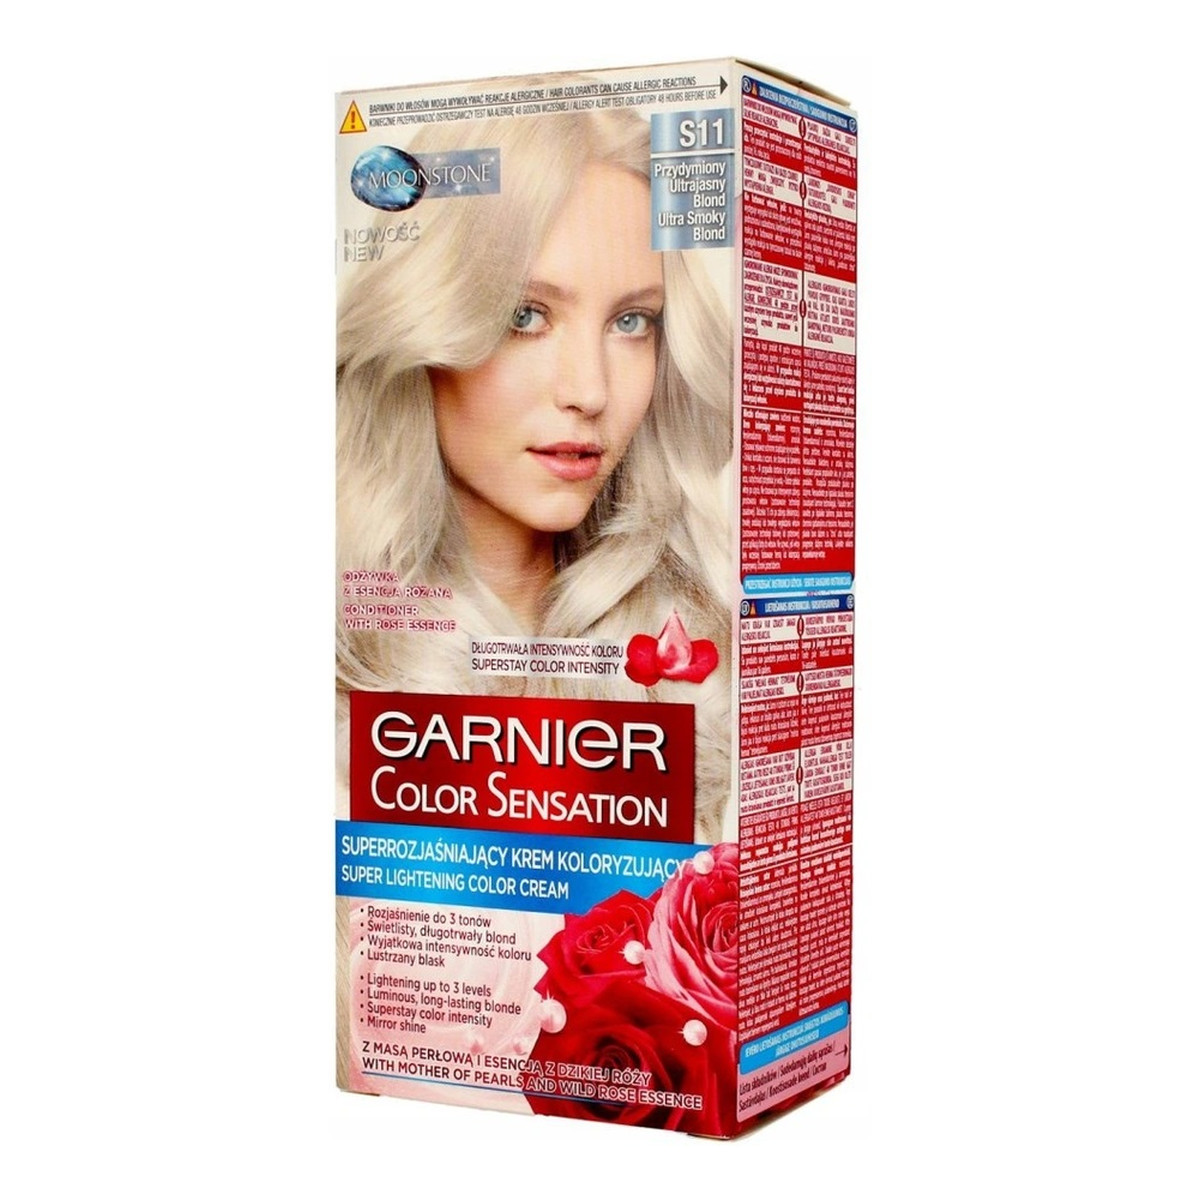 Garnier Krem Koloryzujący Do Włosów Color Sensation Przydymiony Ultrajasny Blond (S11) 110ml